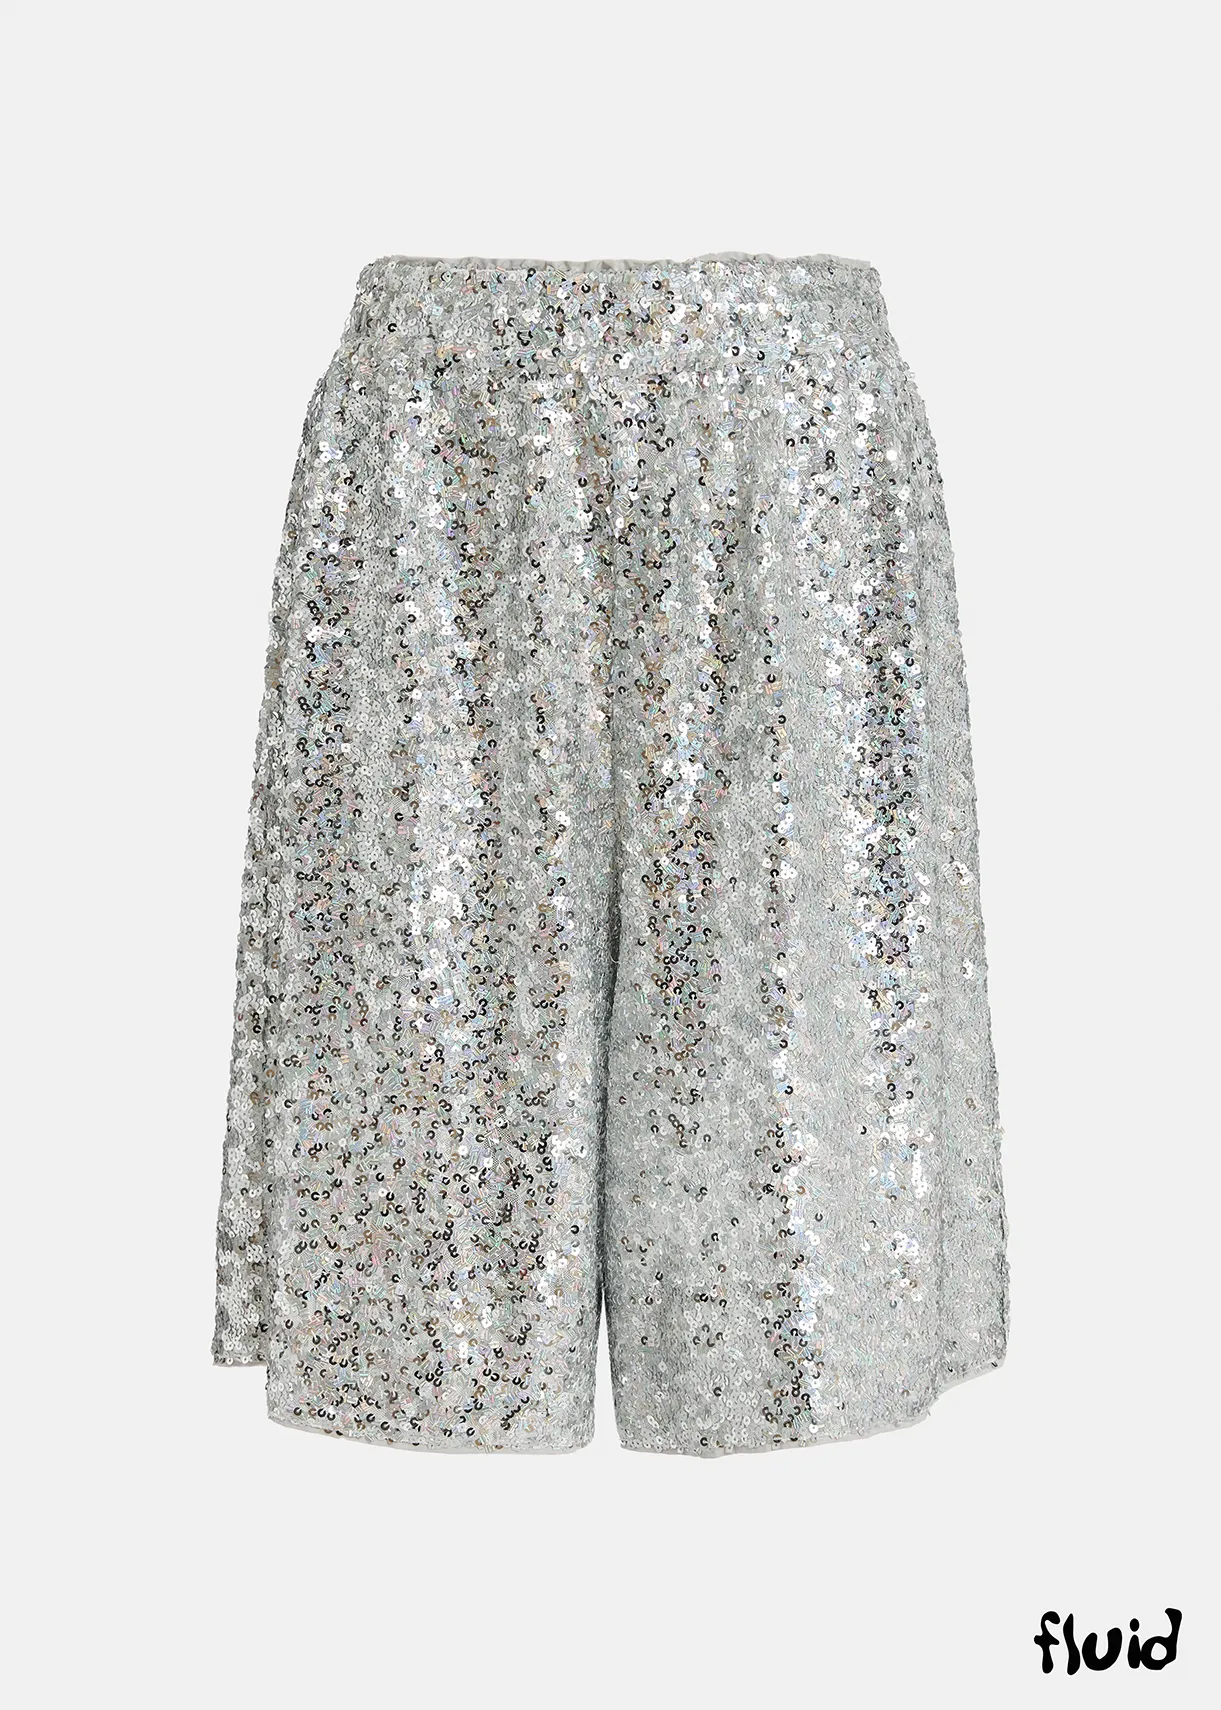 ONLY Shorts - silver lining/silver-coloured - Zalando.de